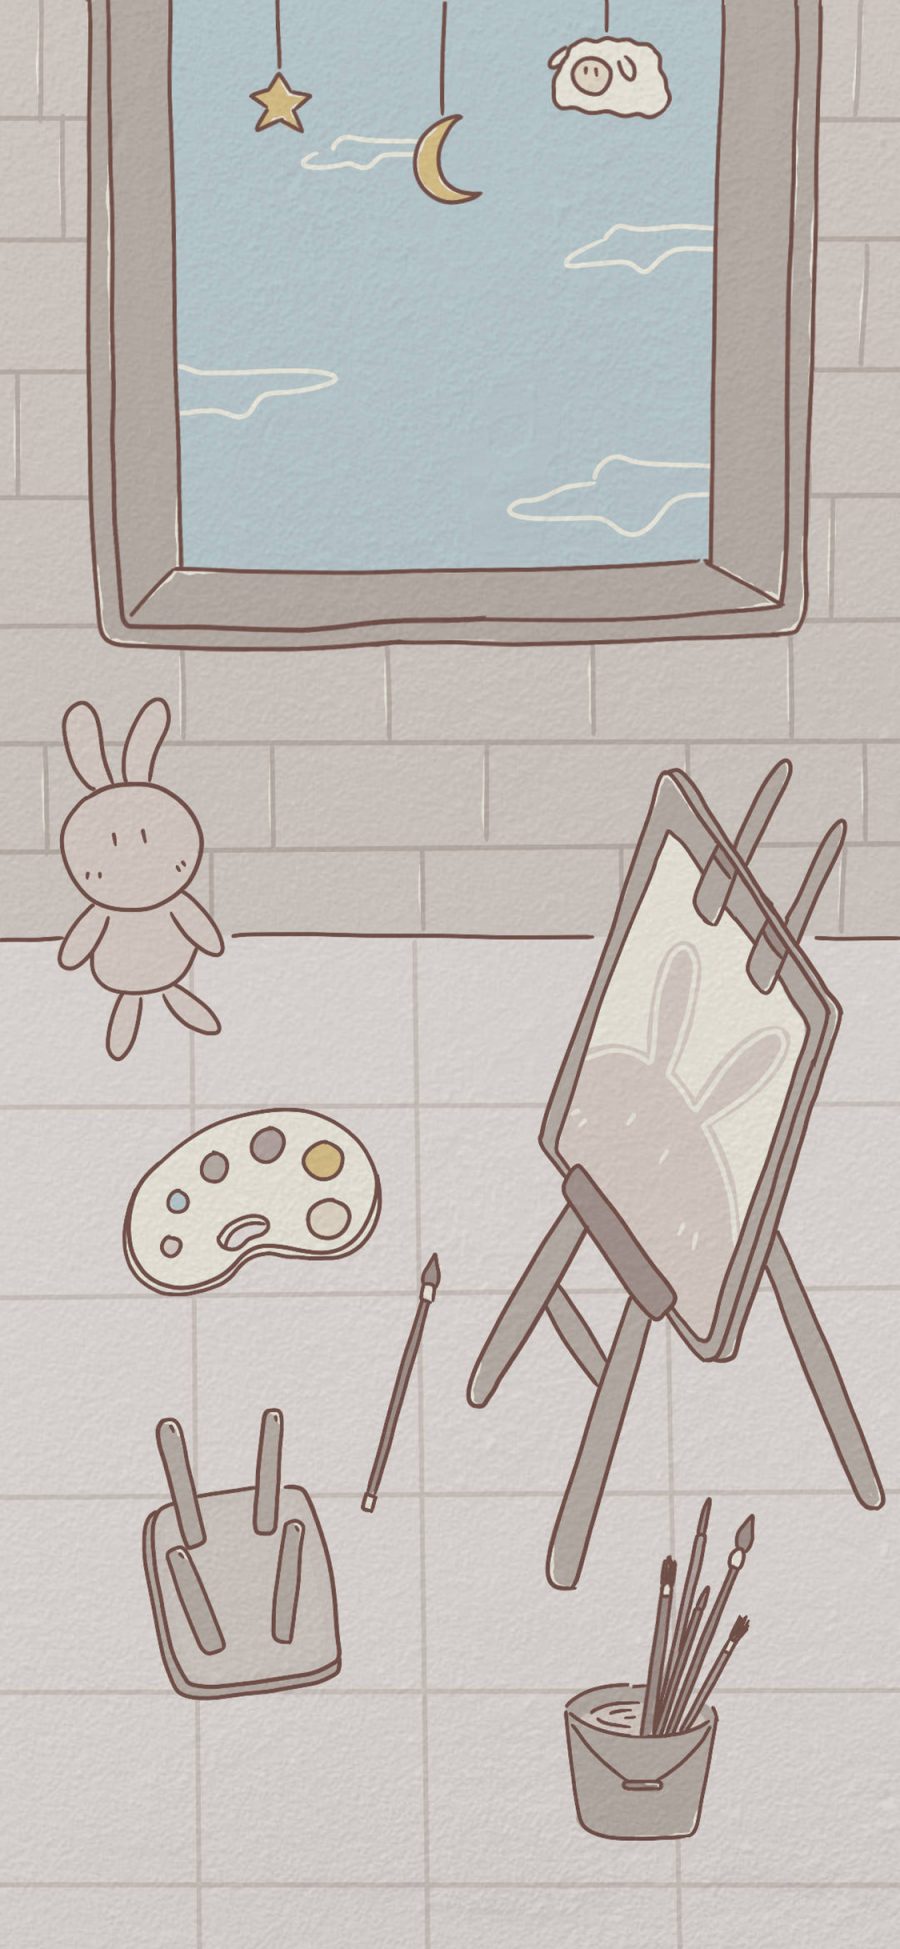 [2436×1125]插图 卡通 兔子 画板 灰色 苹果手机动漫壁纸图片